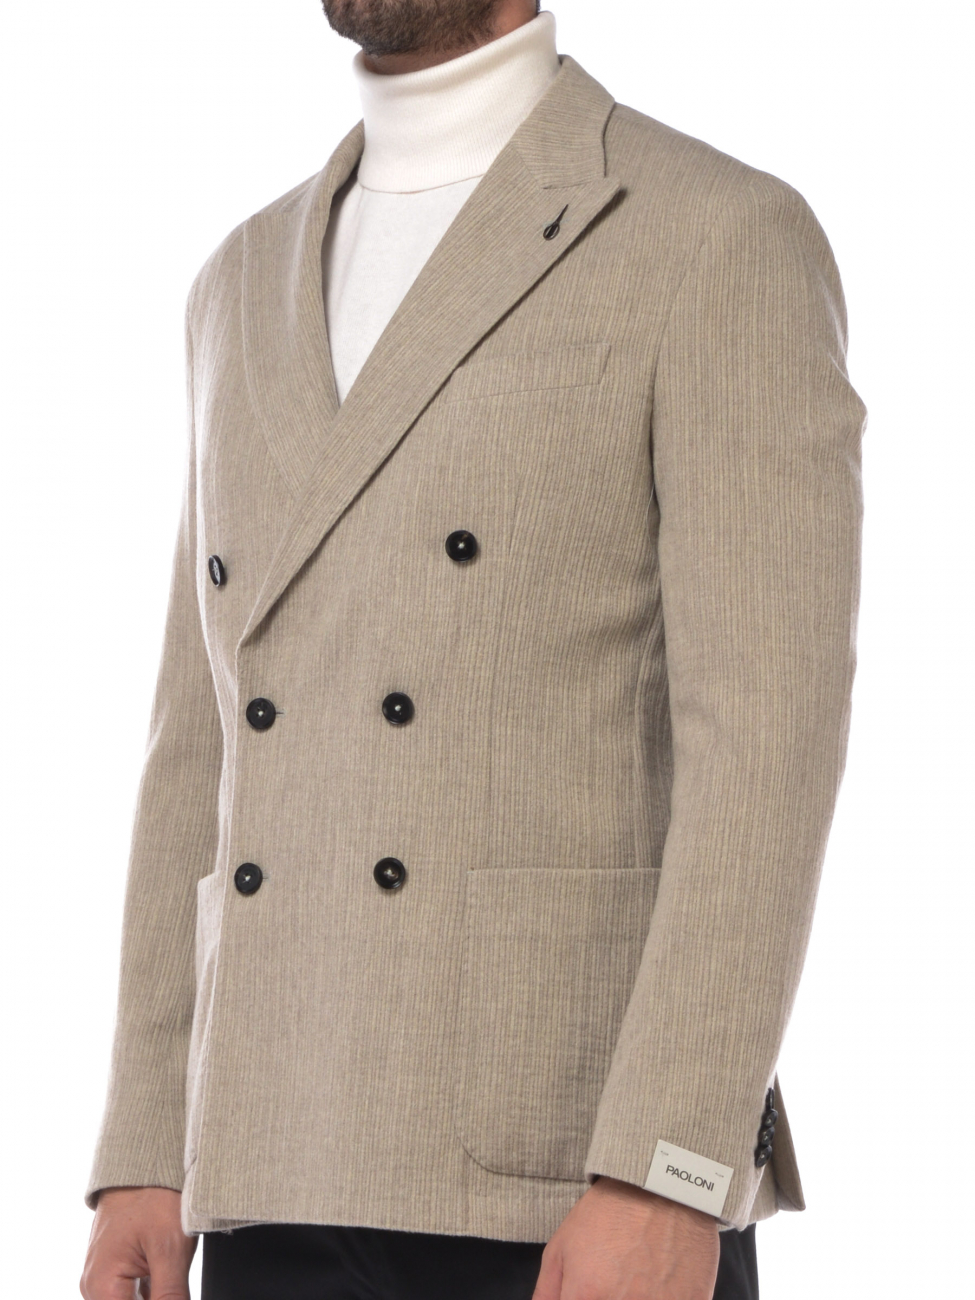 giacca da uomo Paoloni in lana effetto rigato